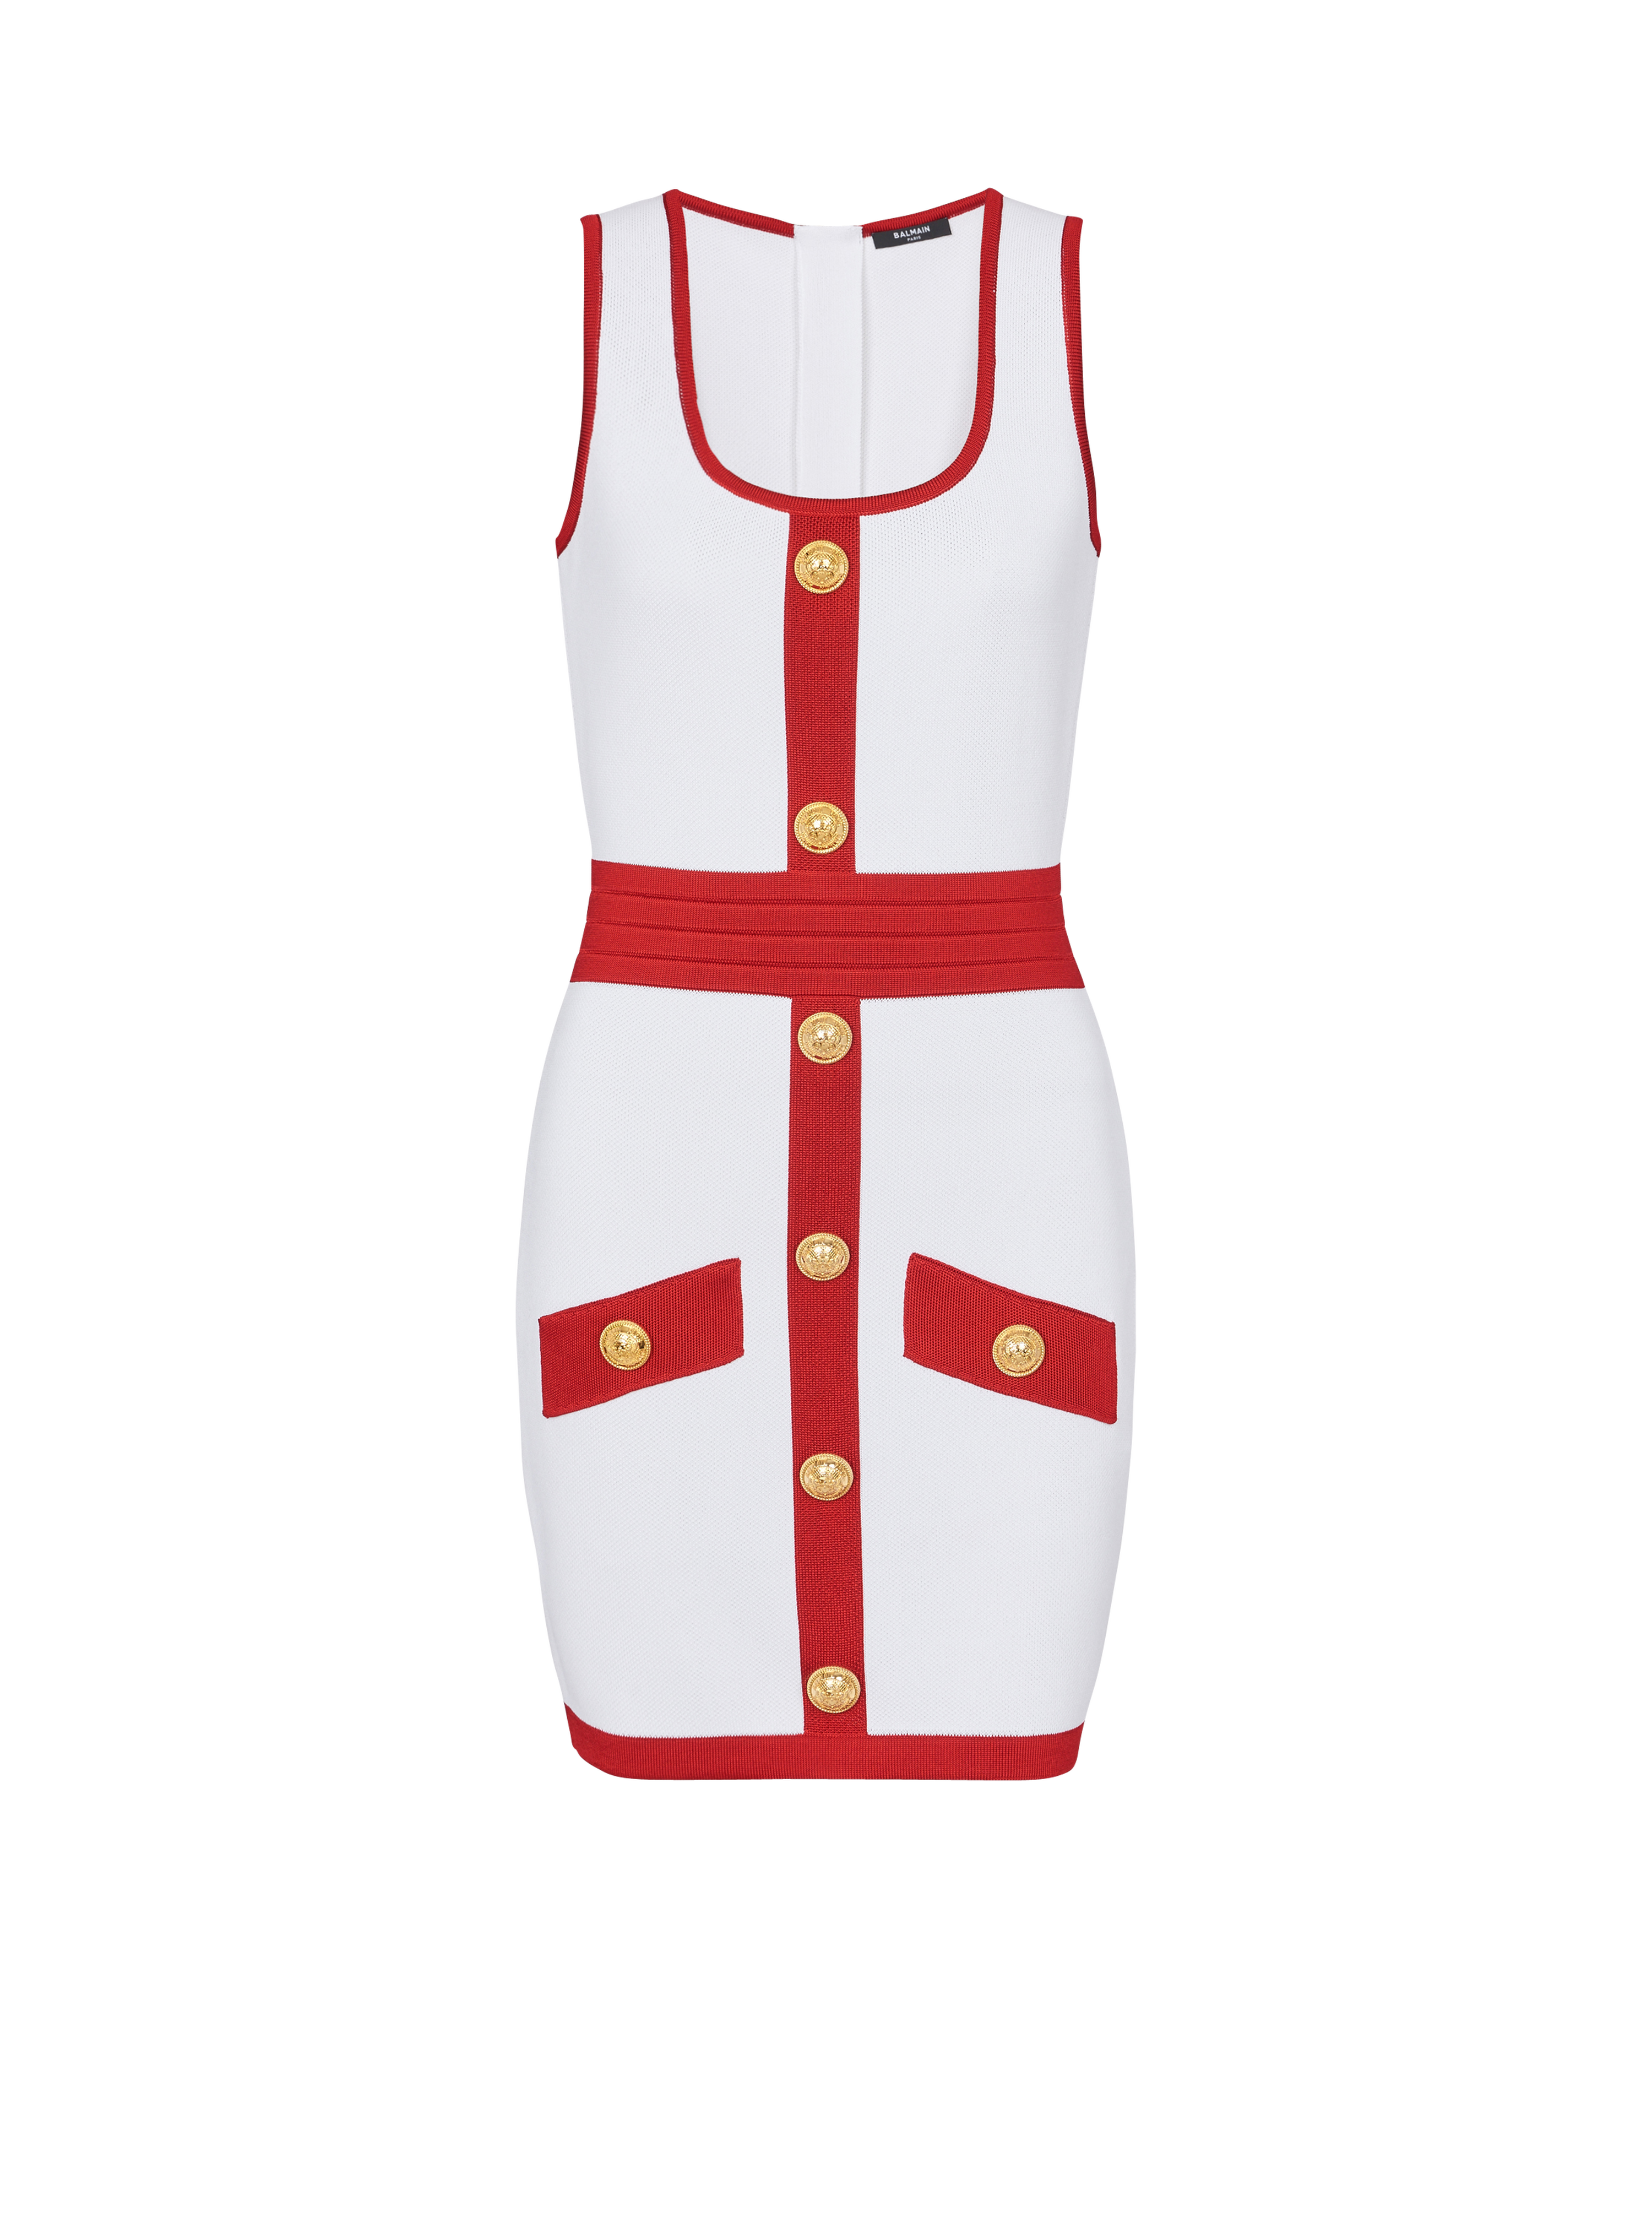 Strickkleid in Weiß und Beige mit goldfarbenen Knöpfen, rot